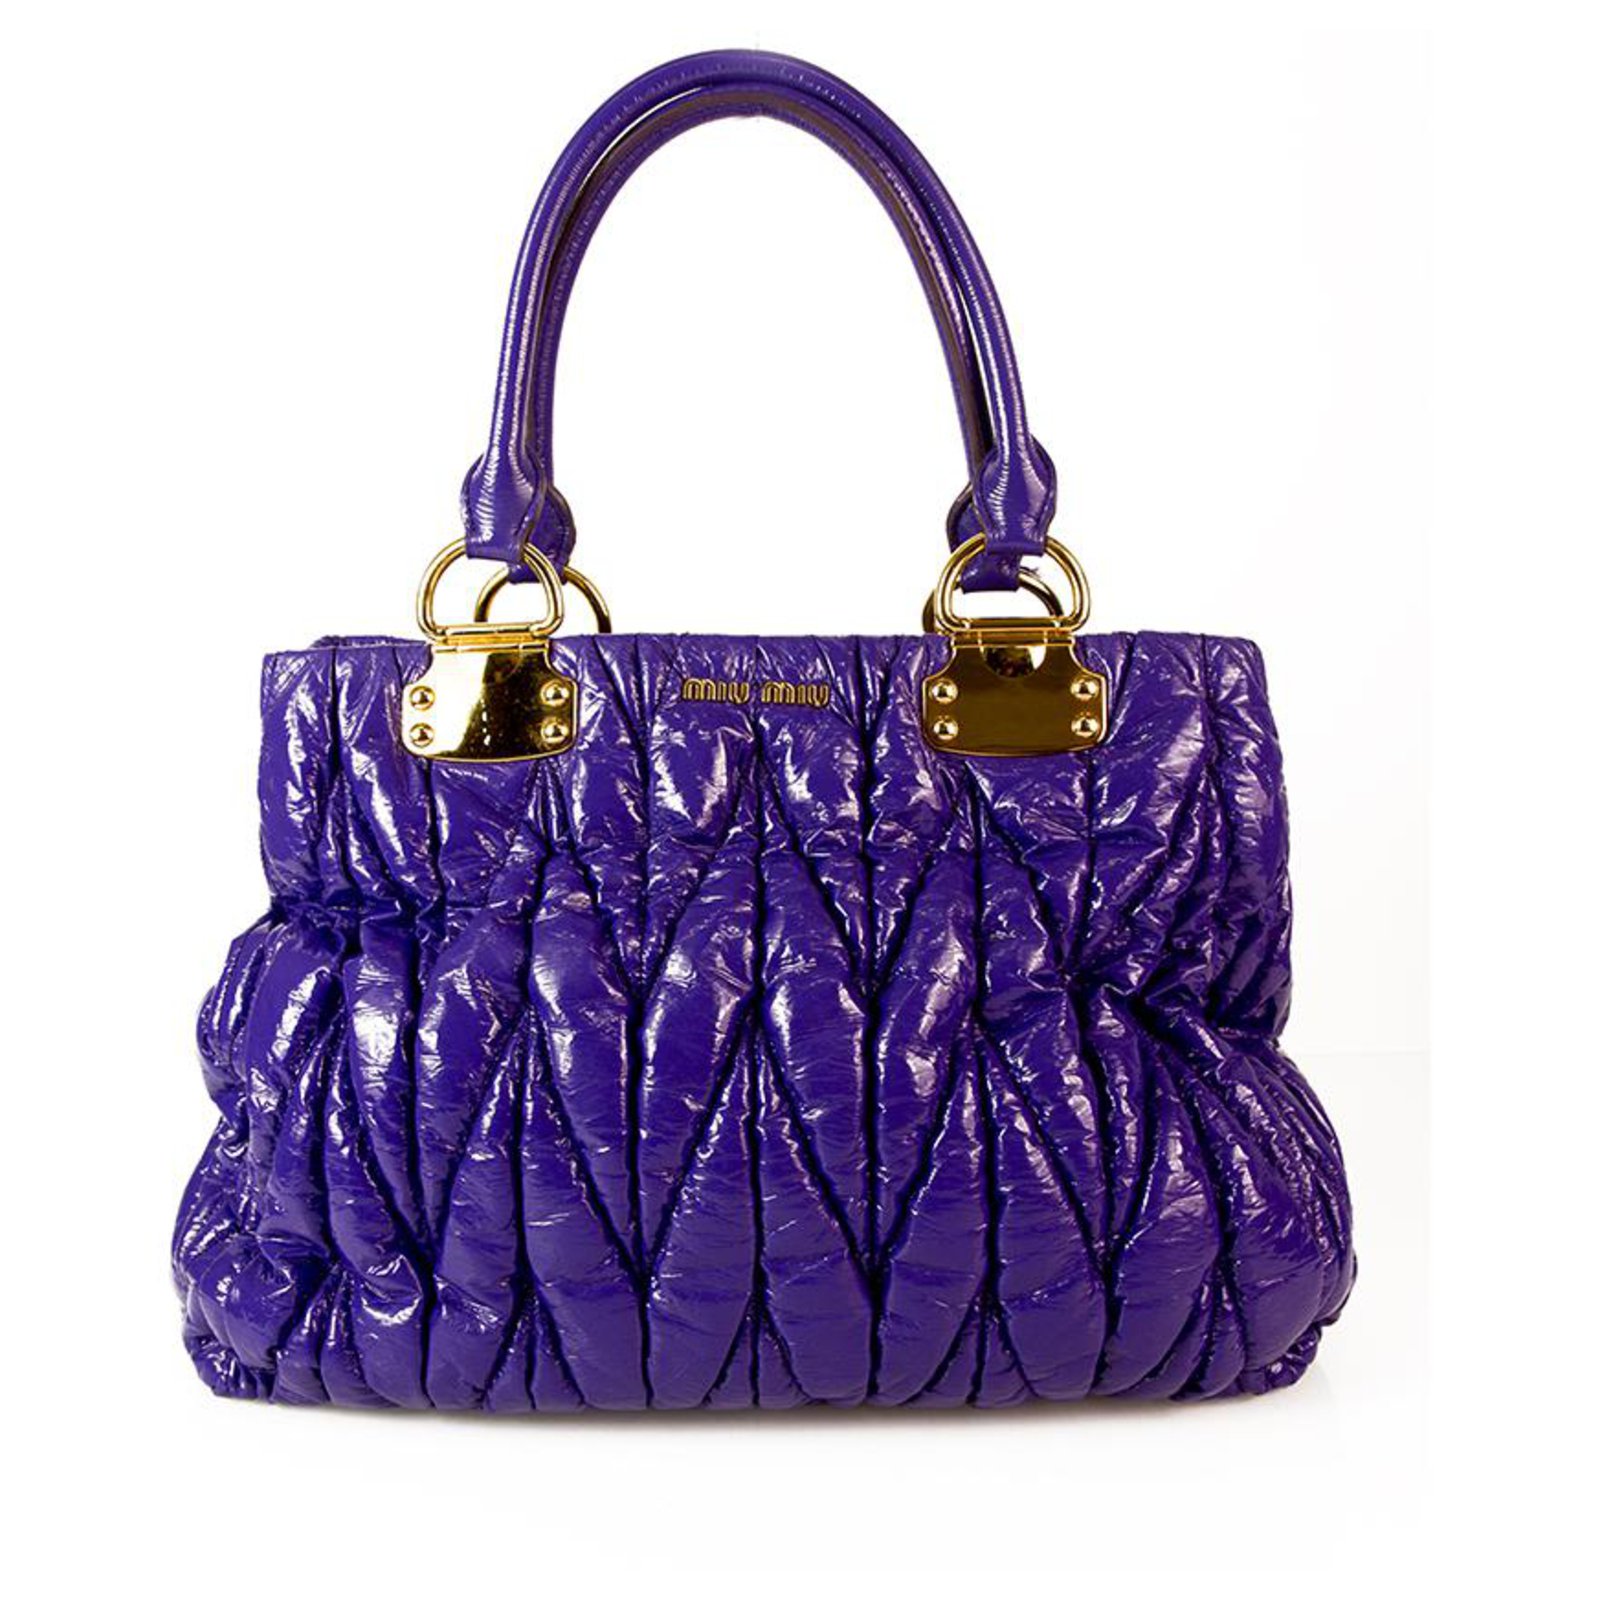 Miu Miu Bow-Accented Suede Bag - Purple Handle Bags, Handbags - MIU43958